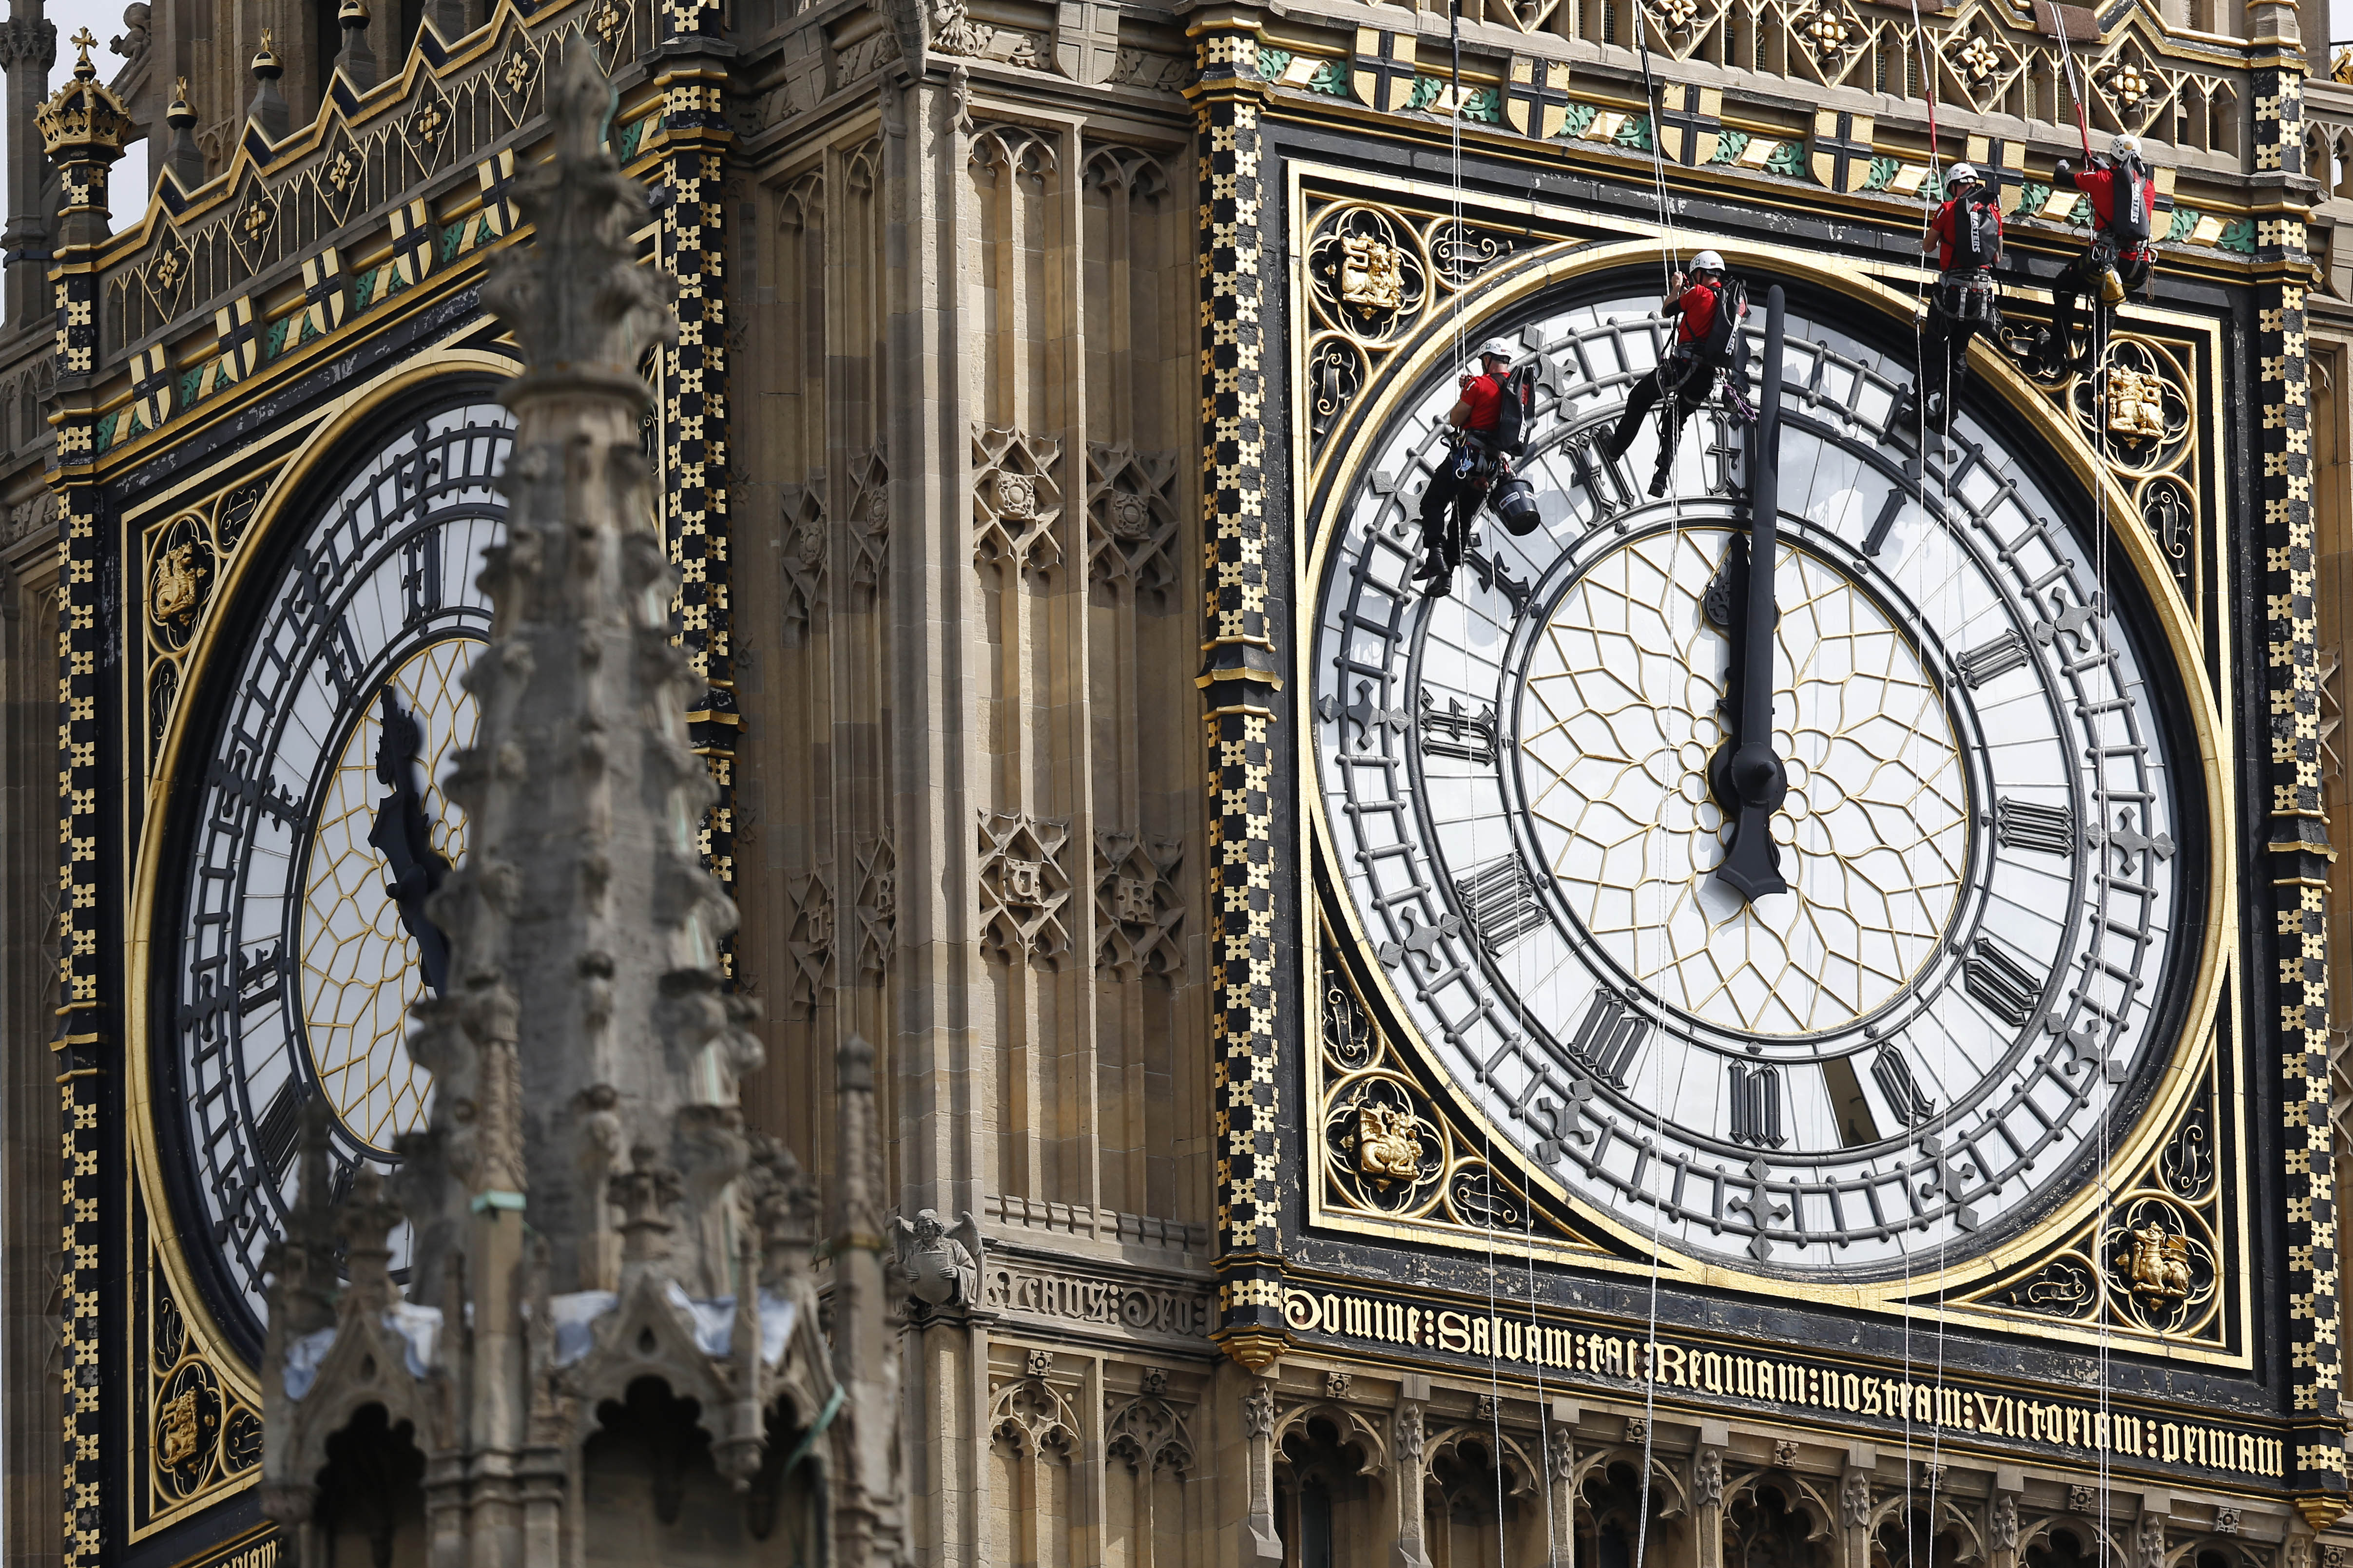 Самый большой часов в мире. Биг-Бен (башня Елизаветы) часы. Лондонские часы Биг Бен. Часовая башня Вестминстерского дворца. Часы на башне св Стефана Вестминстерского дворца.